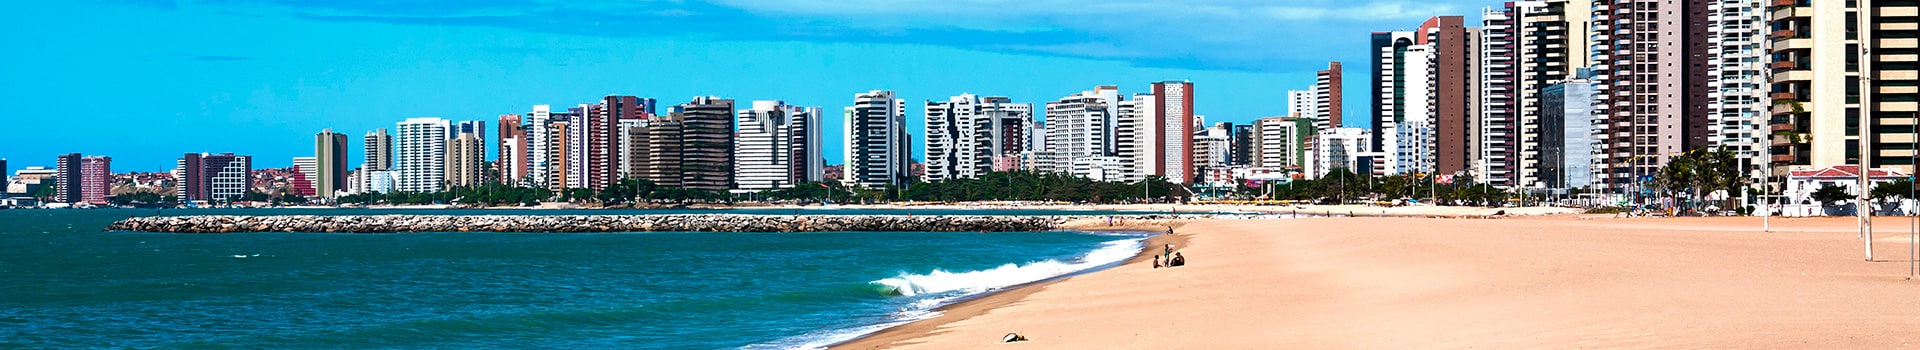 Sao Luis - Fortaleza